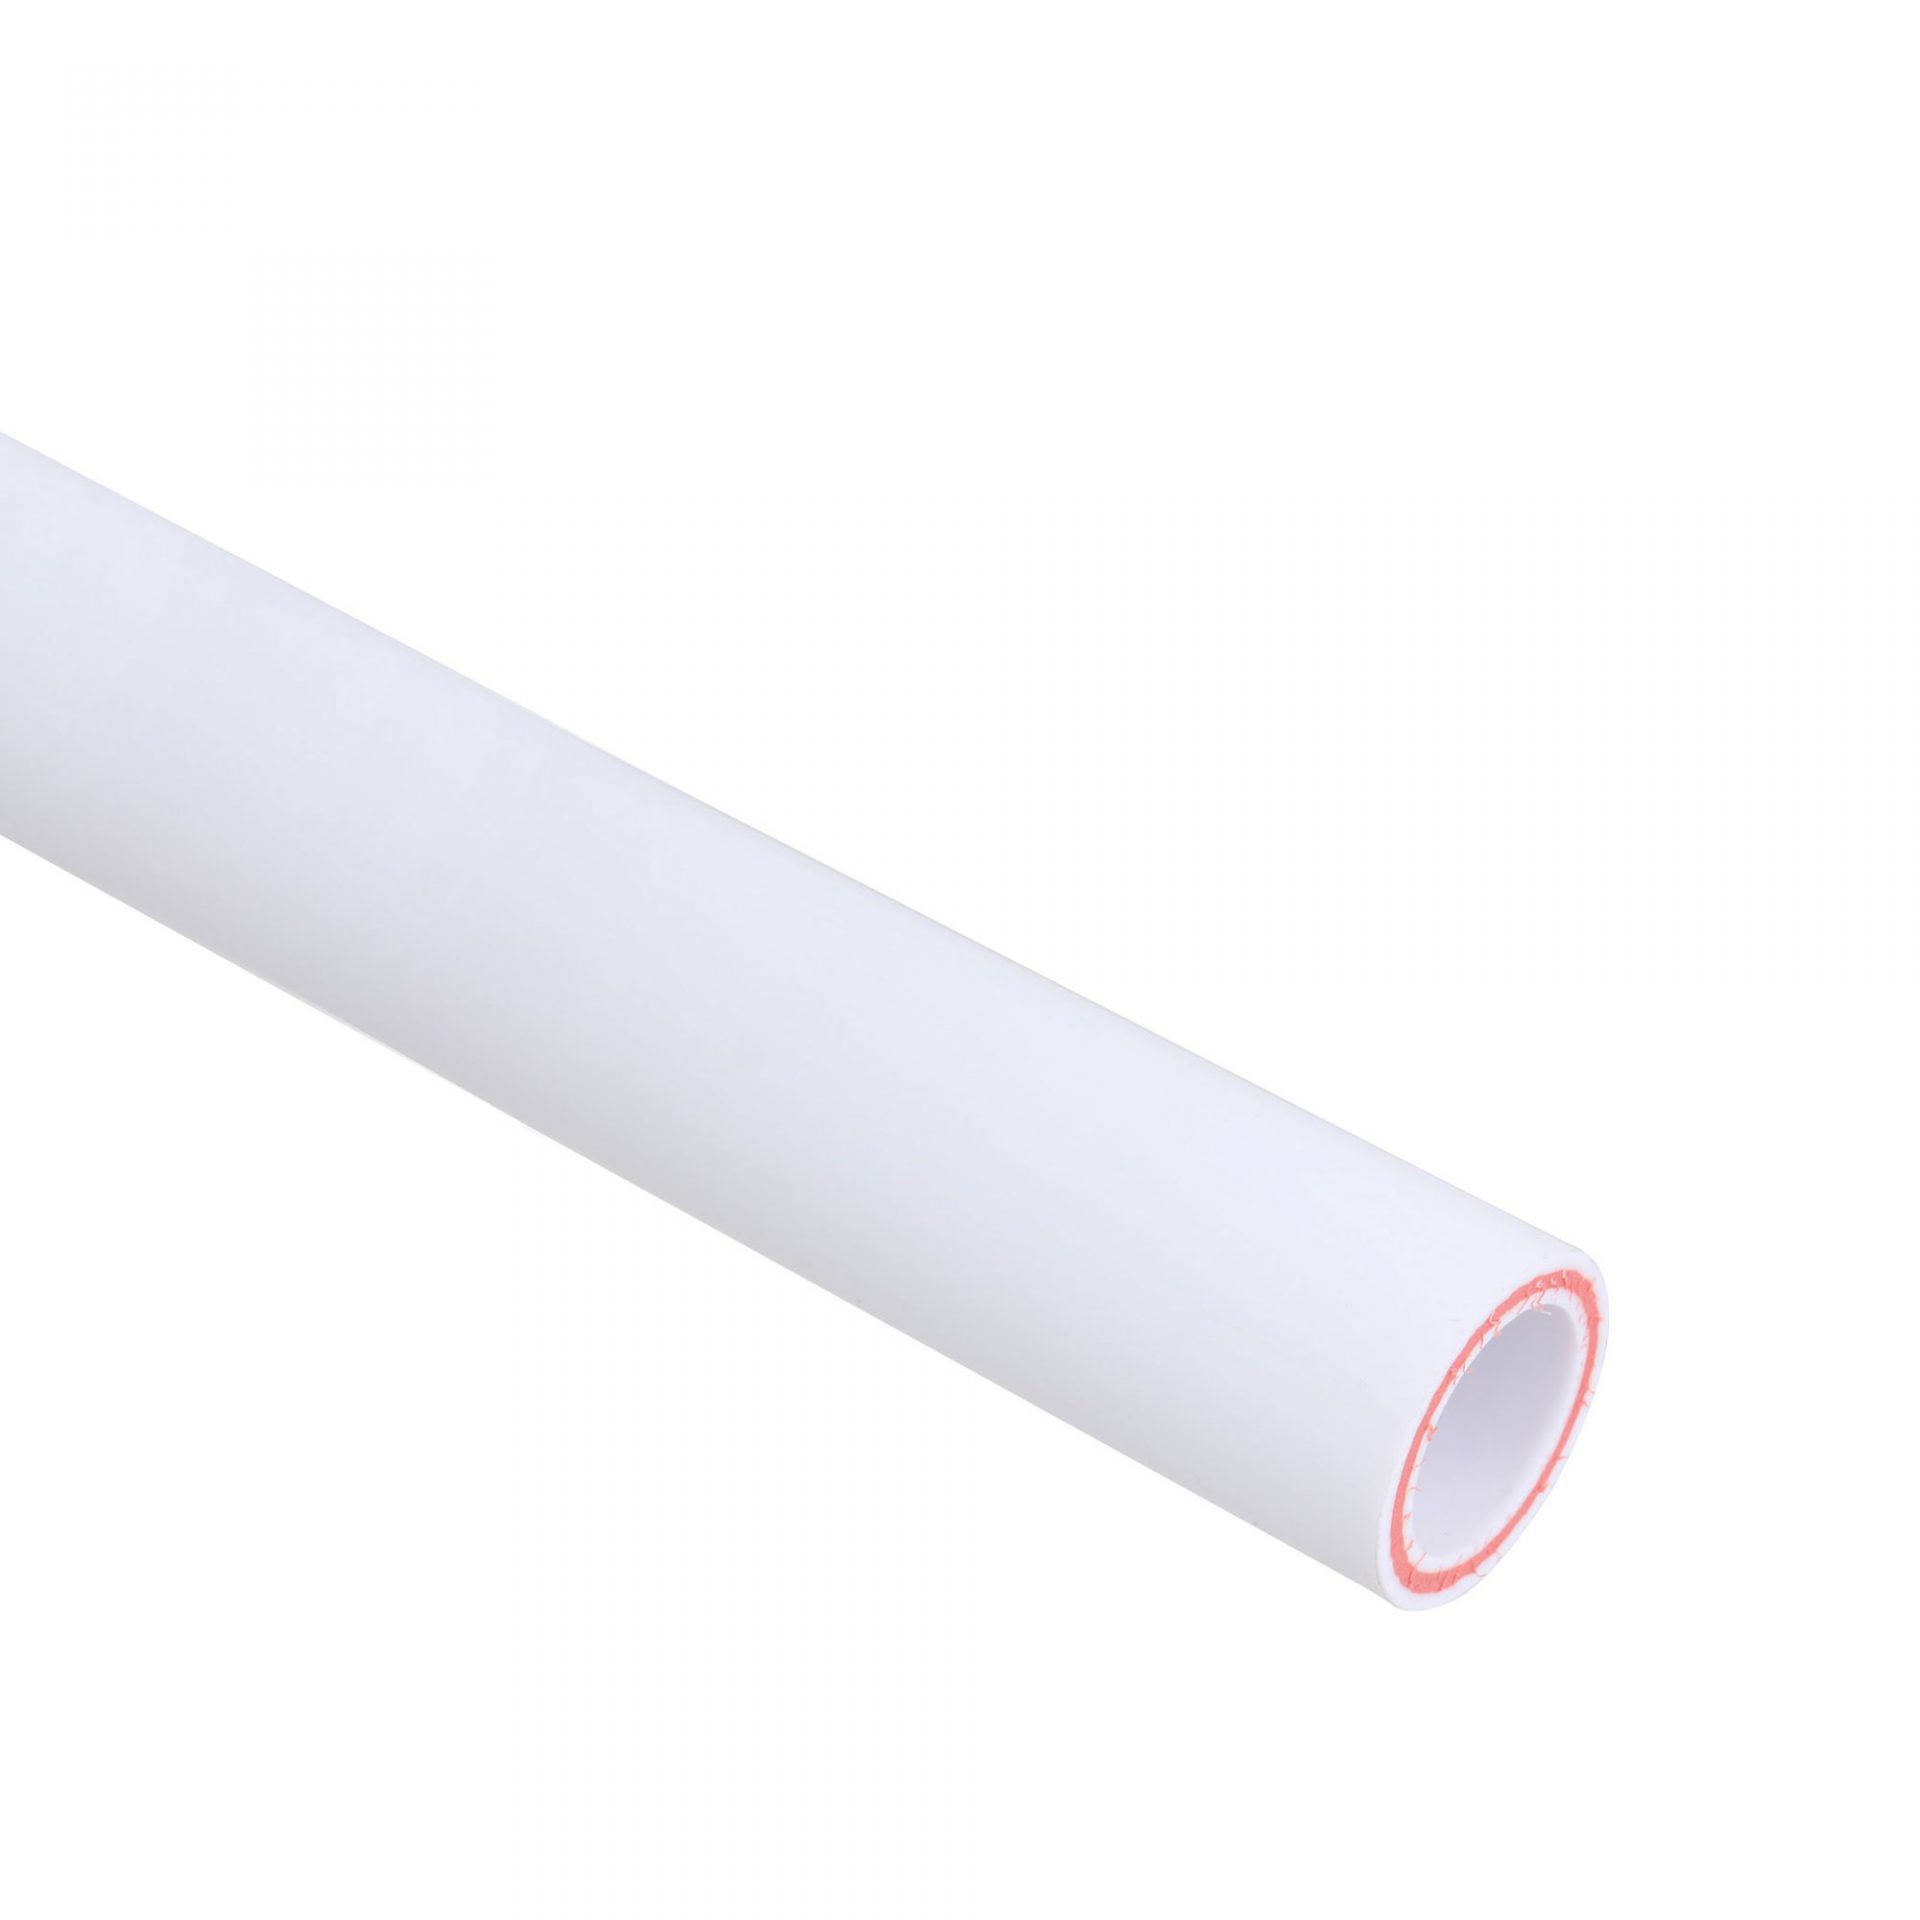 Does not move Lubricate concern Teava PPR cu fibra compozita, alb, 4 m x 25 mm - Noua Tei